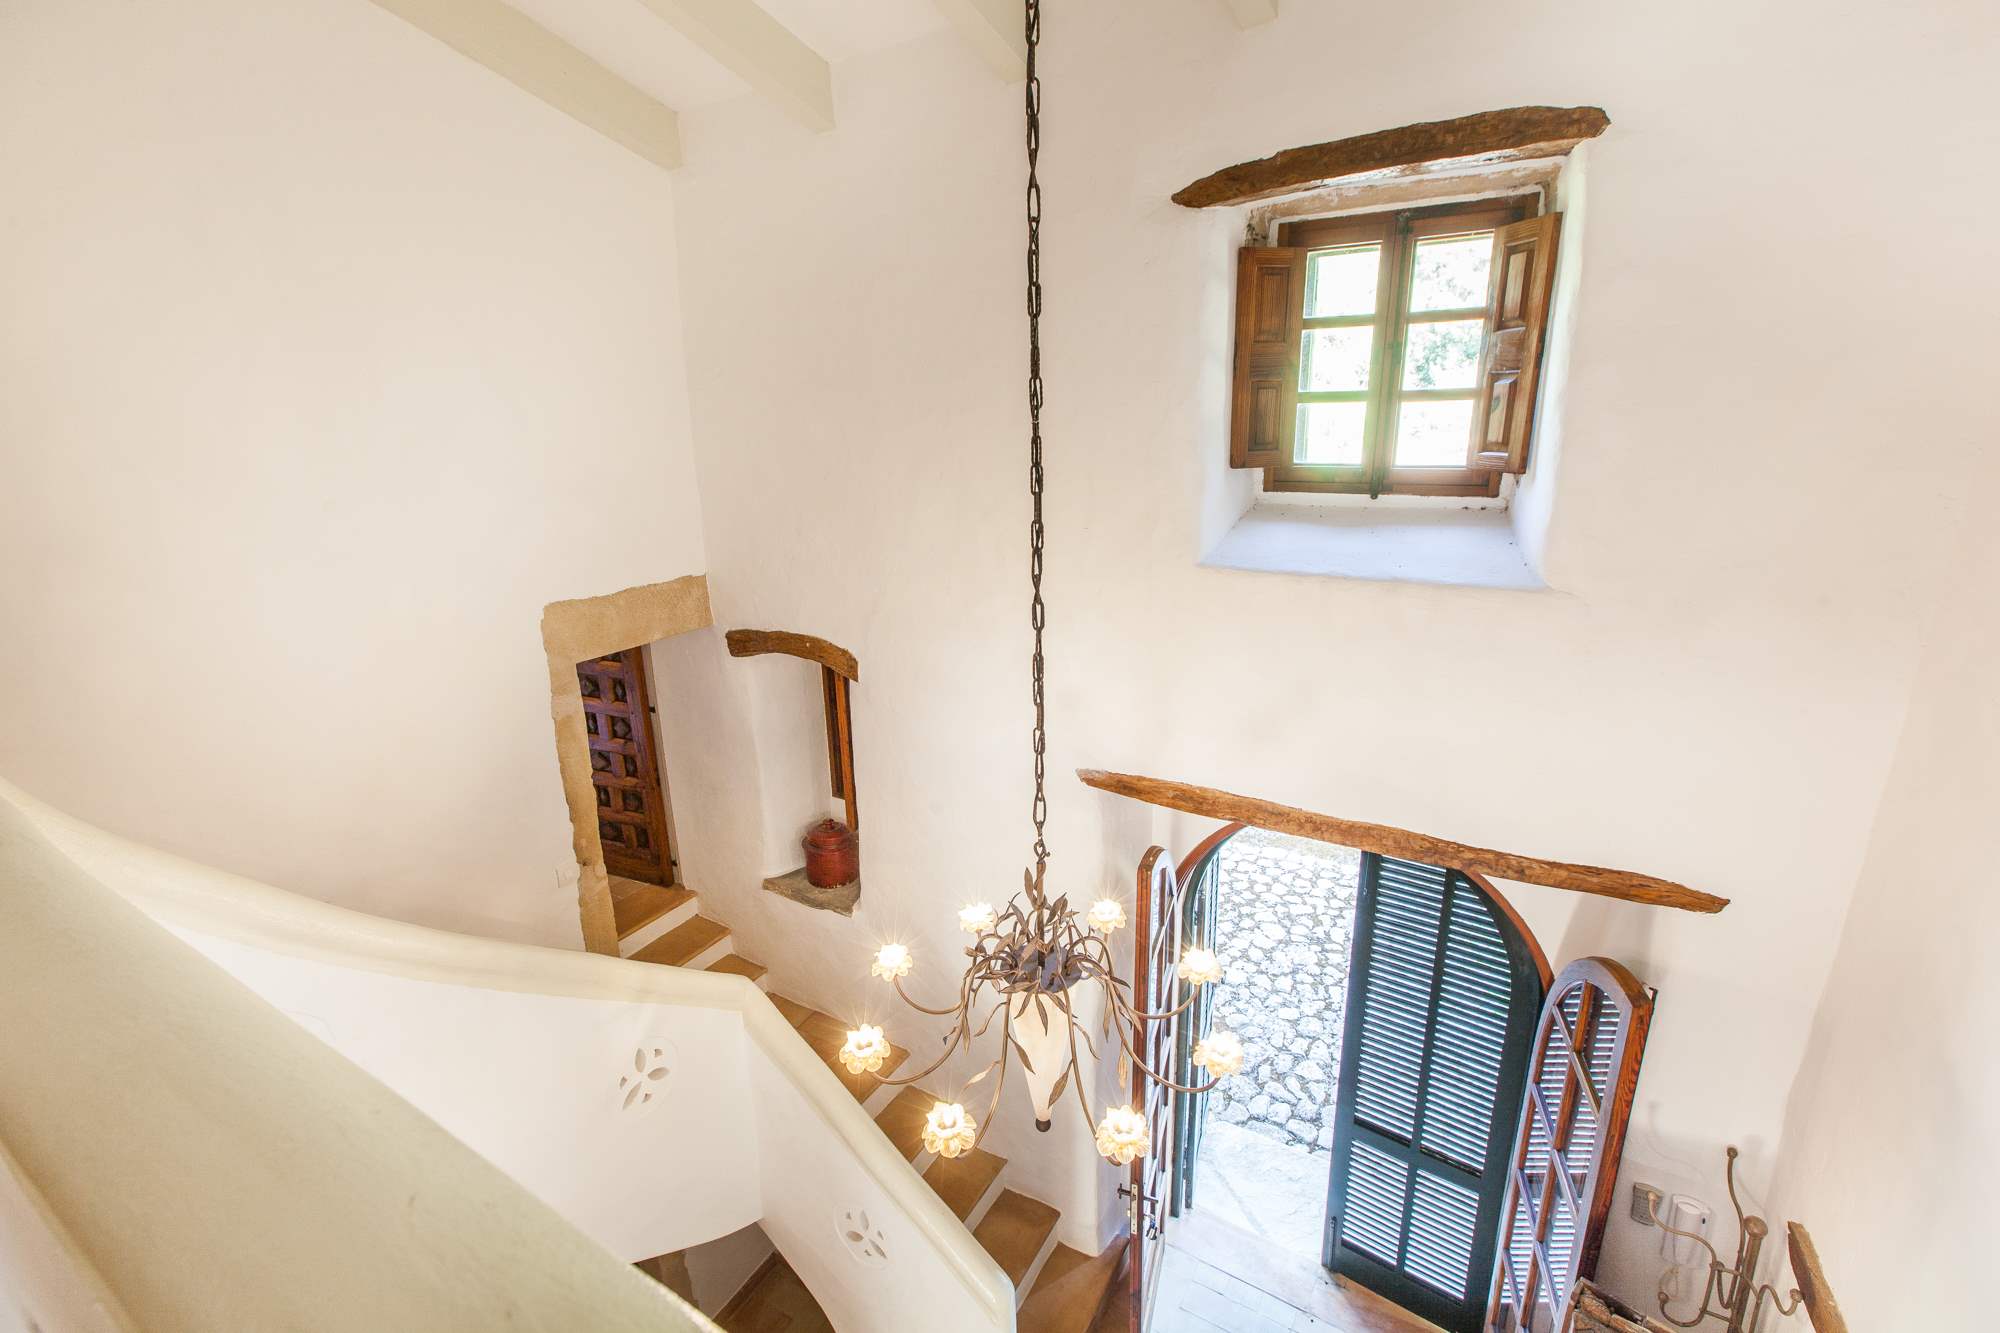 Es Clotal, 4 bedroom, 4 bedroom villa in Pollensa & Puerto Pollensa, Majorca Photo #14